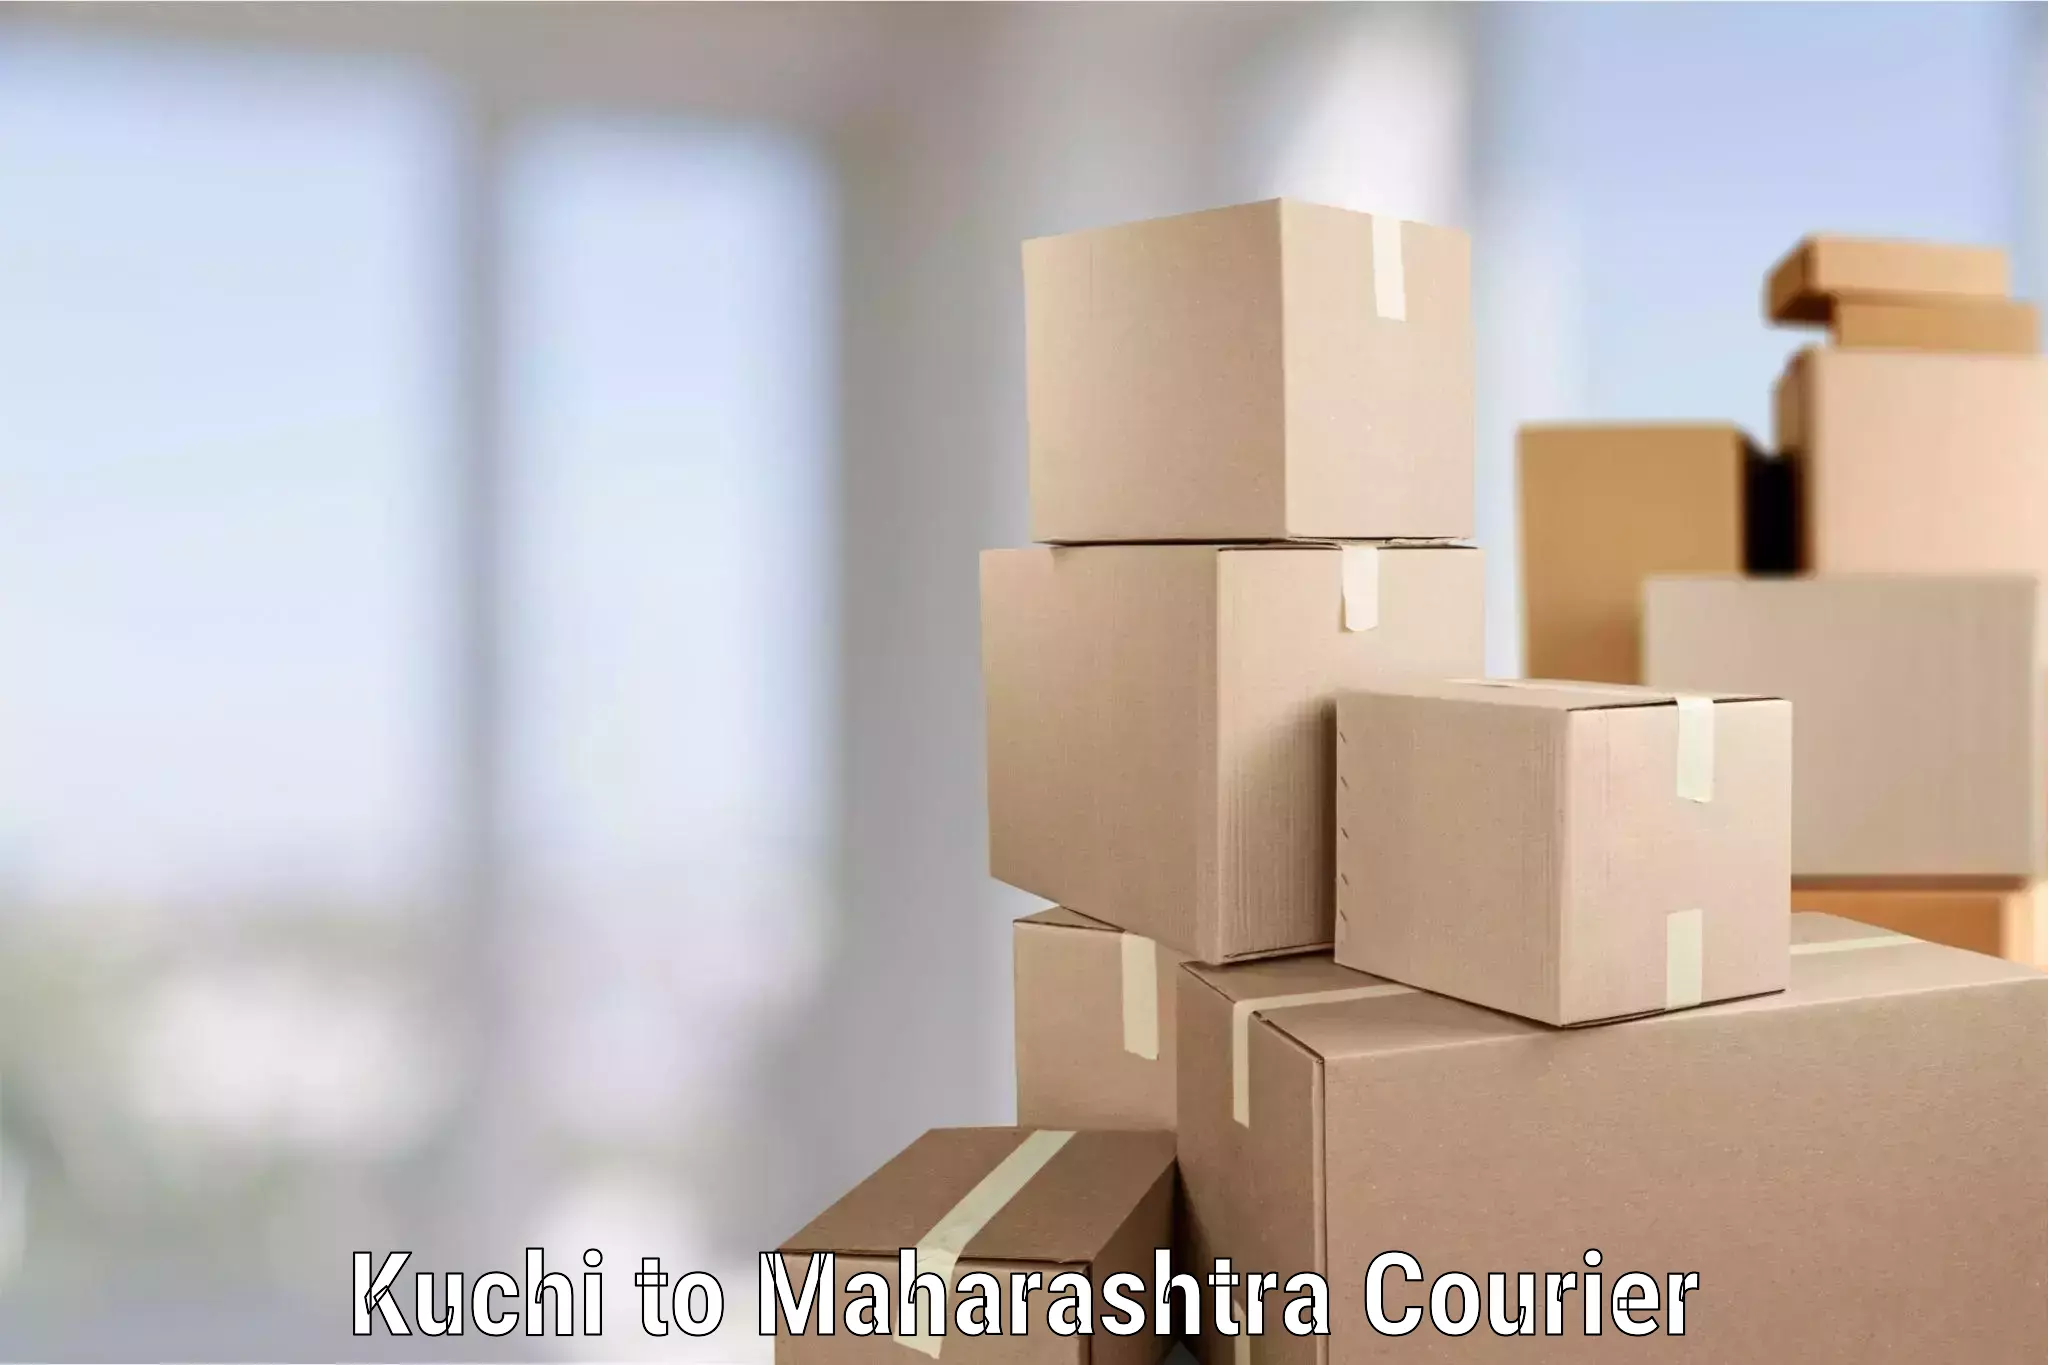 Professional moving company Kuchi to Mahagaon